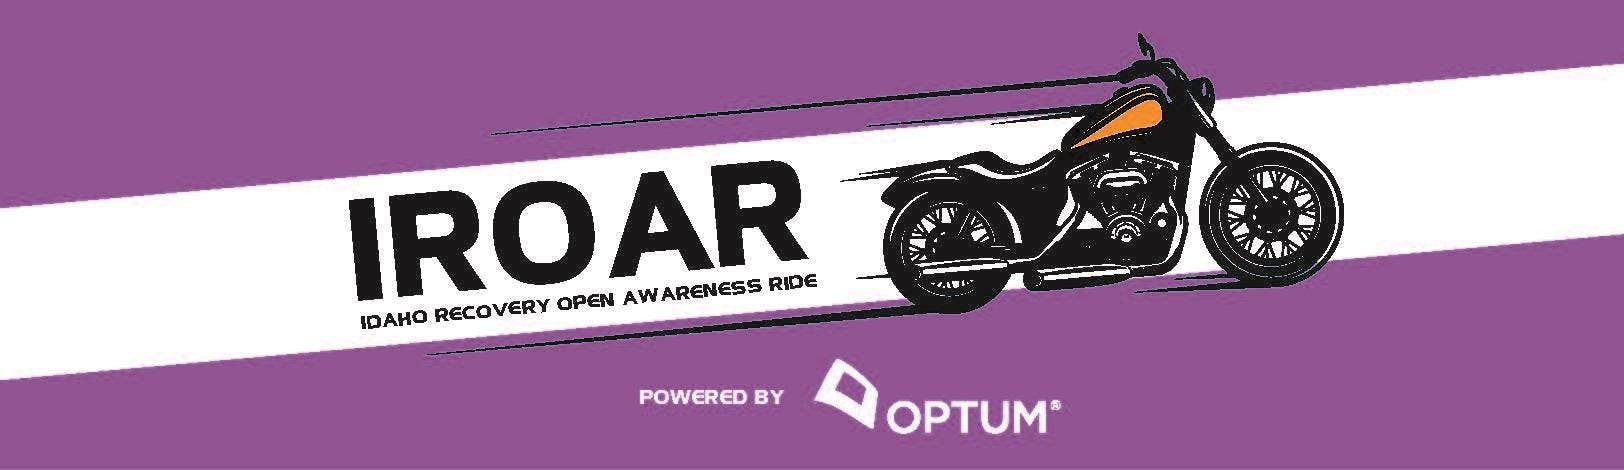 IROAR - Idaho Recovery Open Awareness Ride 